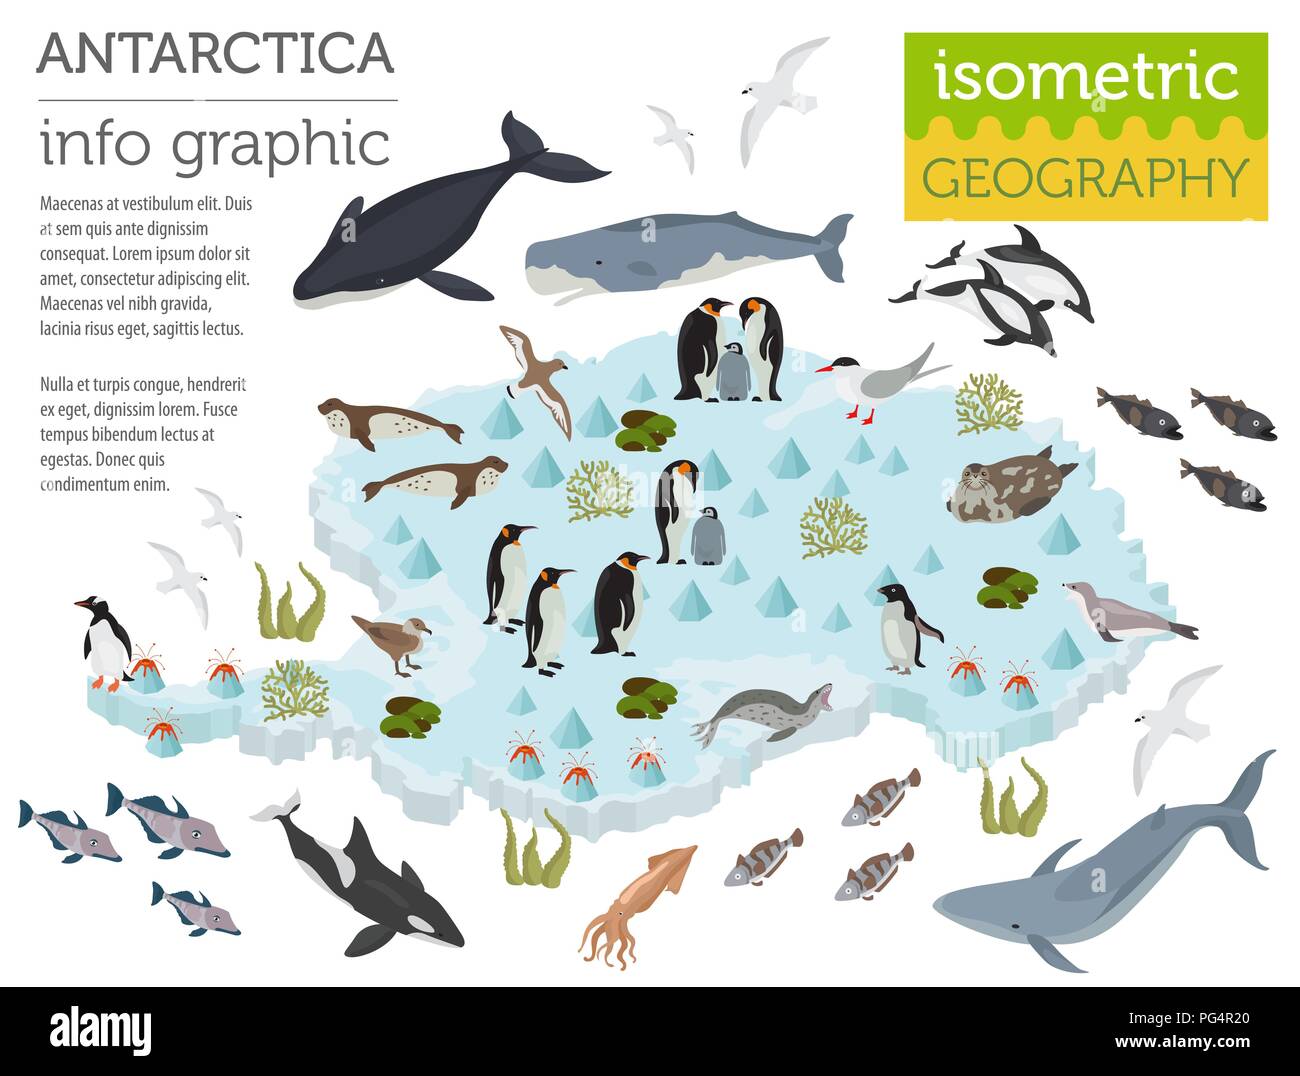 Isometrische 3d-Antarktis Flora und Fauna Karte Elemente. Tiere, Vögel und  Sea Life. Ihre eigene Geographie Infografiken Sammlung aufzubauen. Vektor  illustrati Stock-Vektorgrafik - Alamy